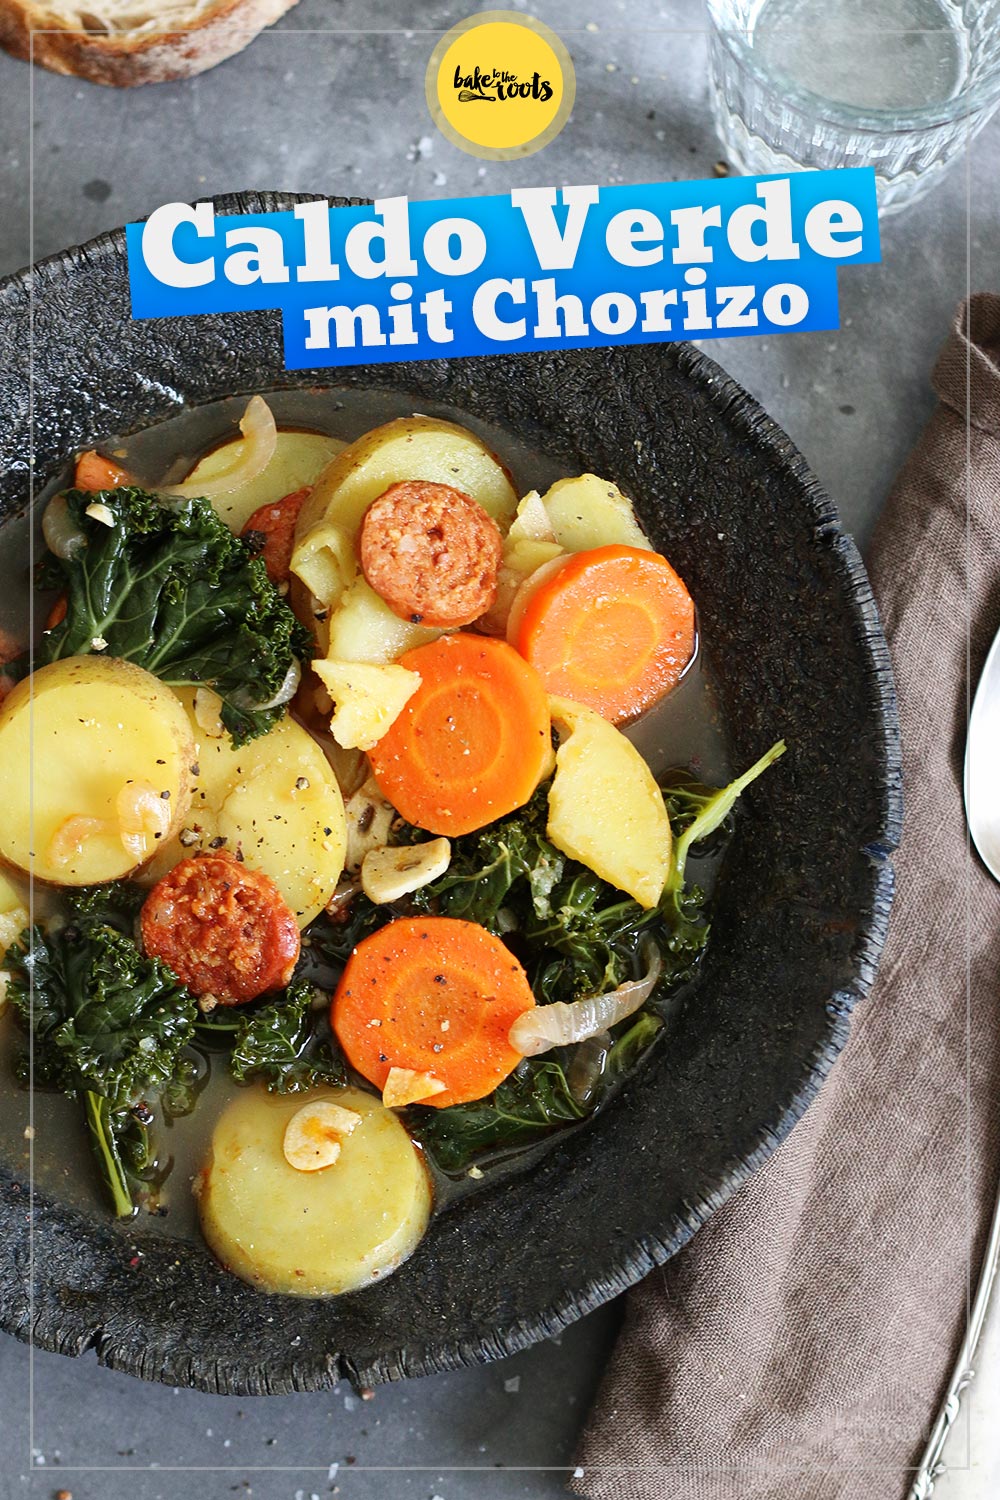 Caldo Verde mit Chorizo, Kartoffeln und Grünkohl | Bake to the roots